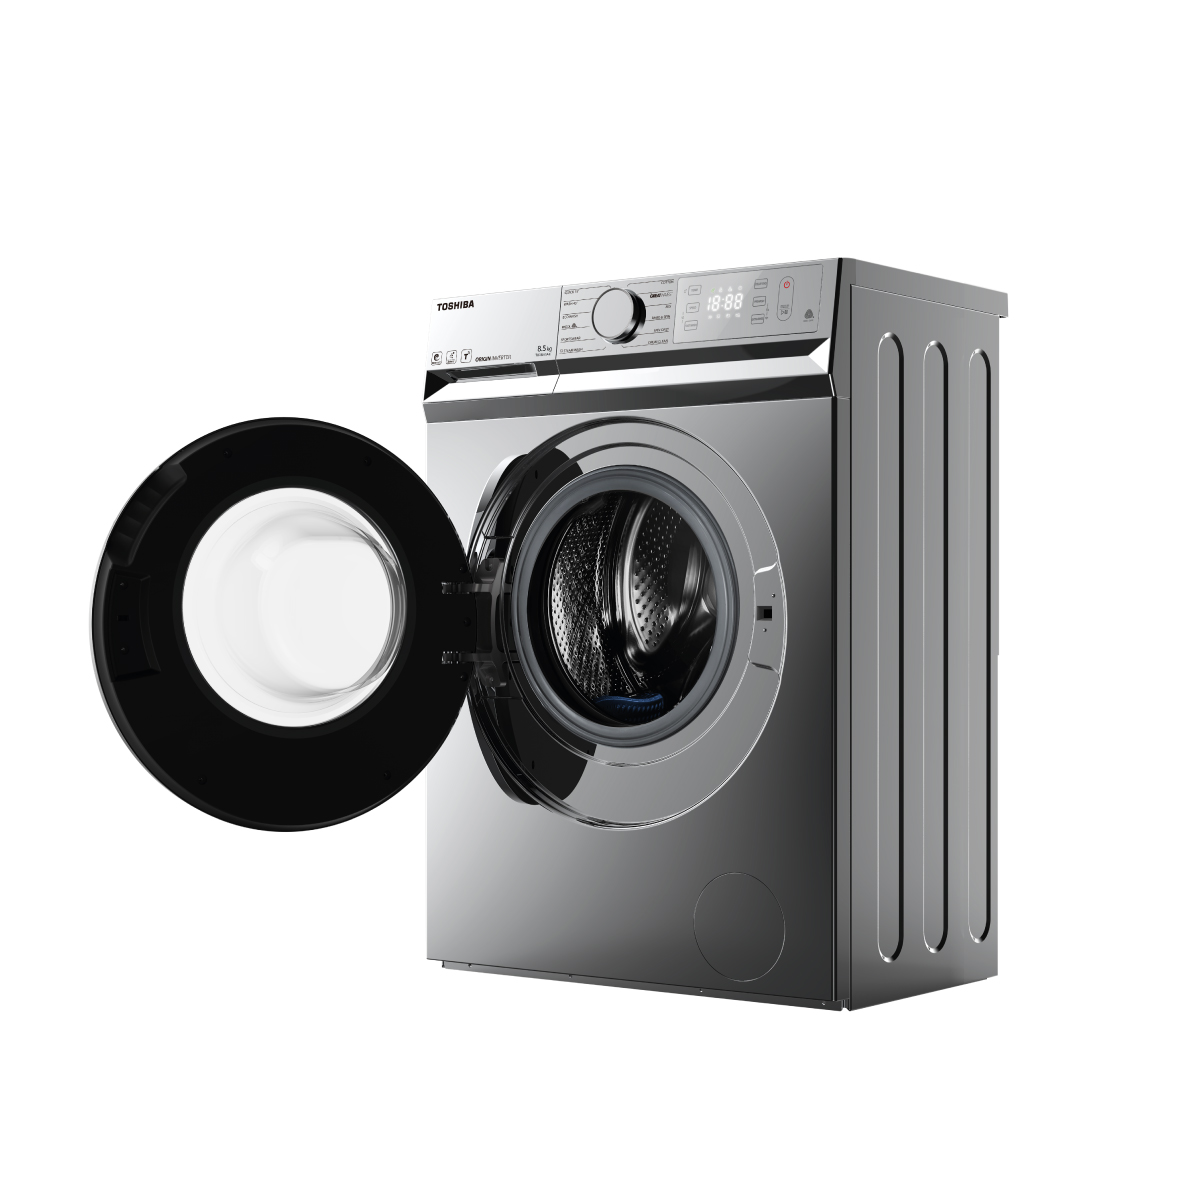 Máy giặt: Máy giặt - một thiết bị không thể thiếu trong cuộc sống hiện đại. Nhưng bạn có biết máy giặt còn có thể trở thành nguồn cảm hứng để tạo ra những tác phẩm nghệ thuật độc đáo và đẹp mắt không? Hãy xem ngay hình ảnh về máy giặt và tạo nên một sáng tạo mới!